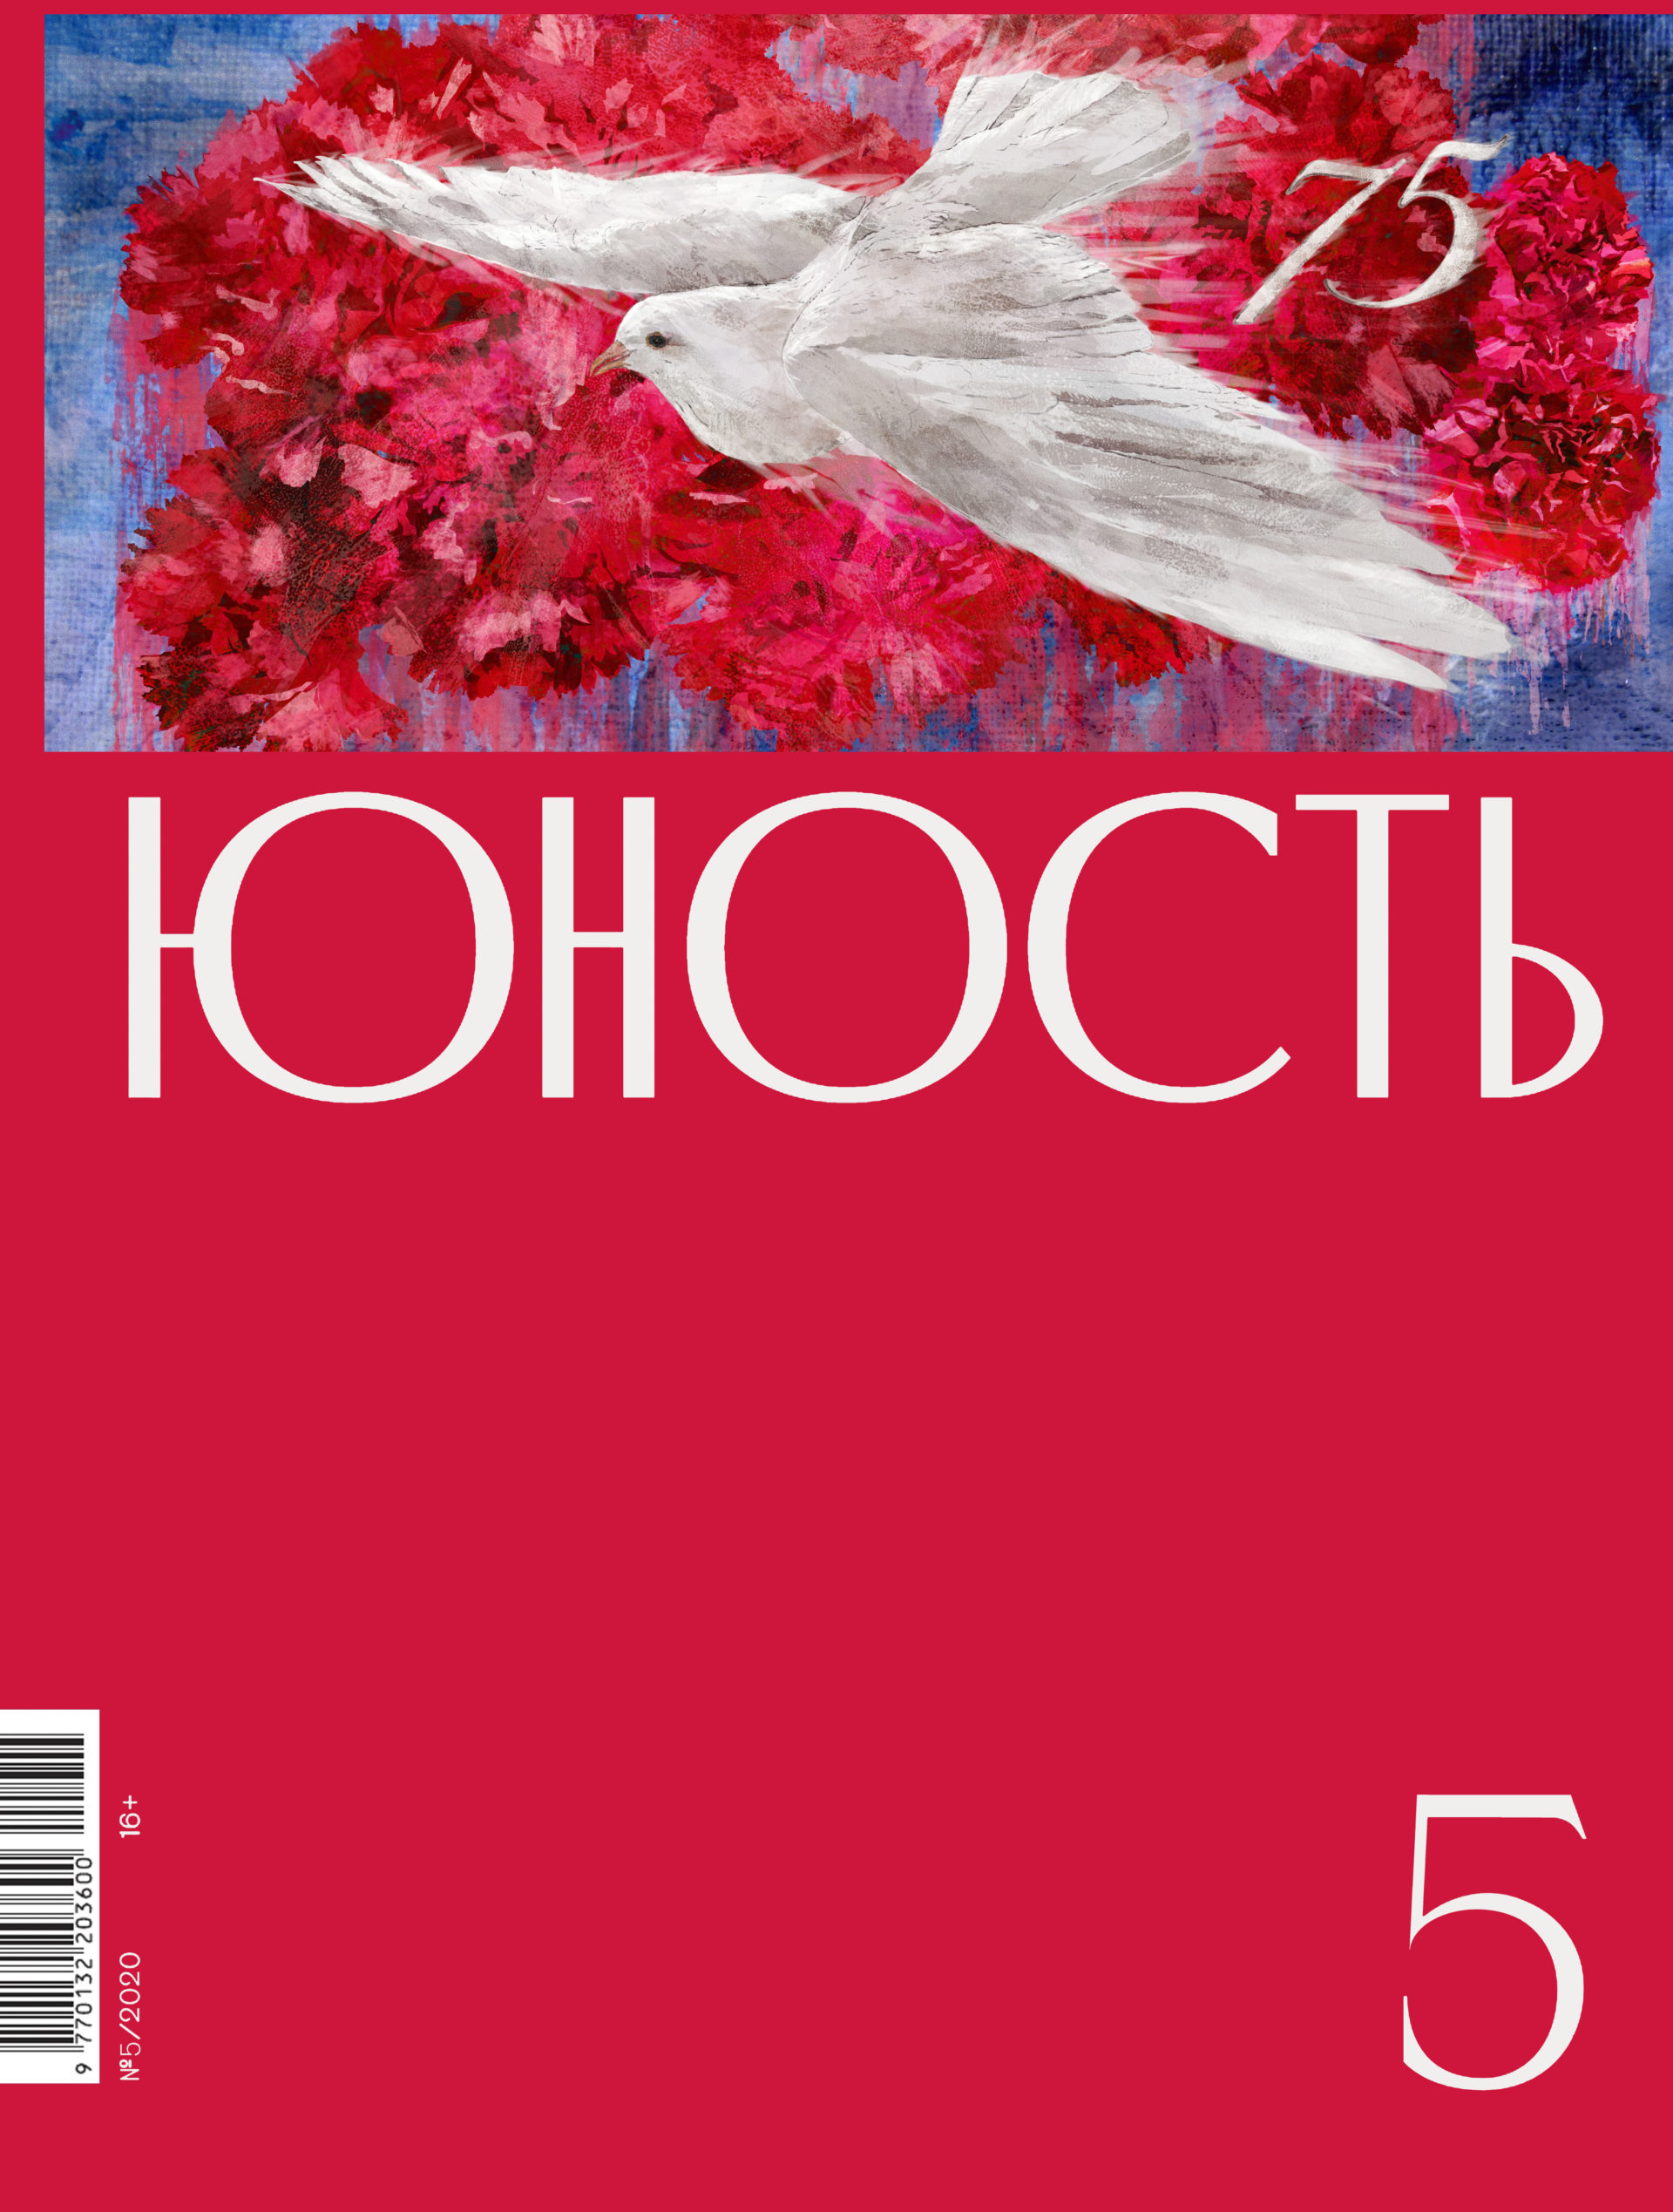 Содержание майского номера журнала «Юность»